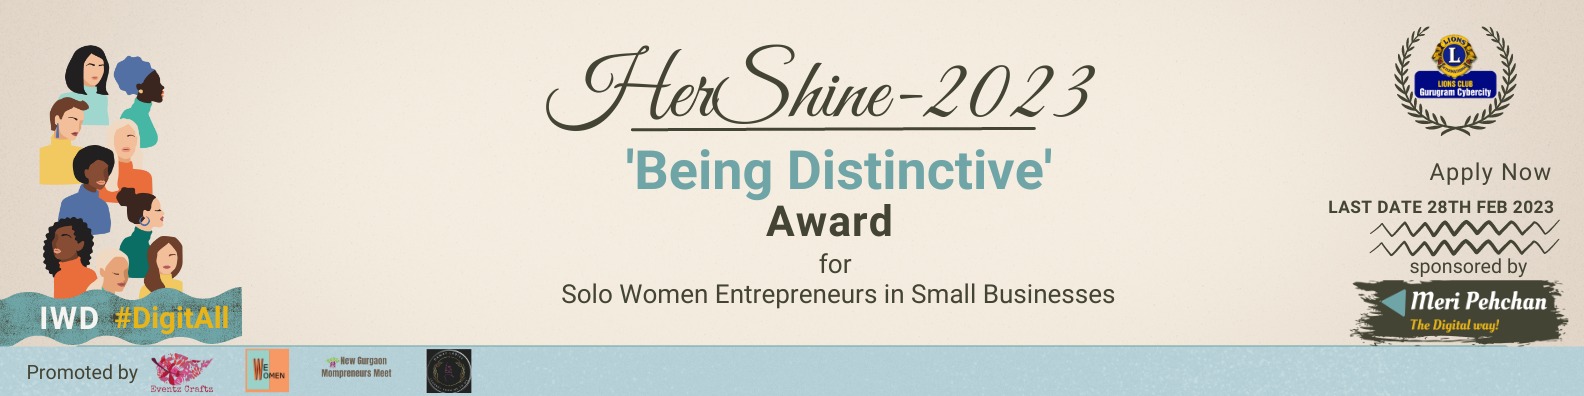 Her Shine Award 2023